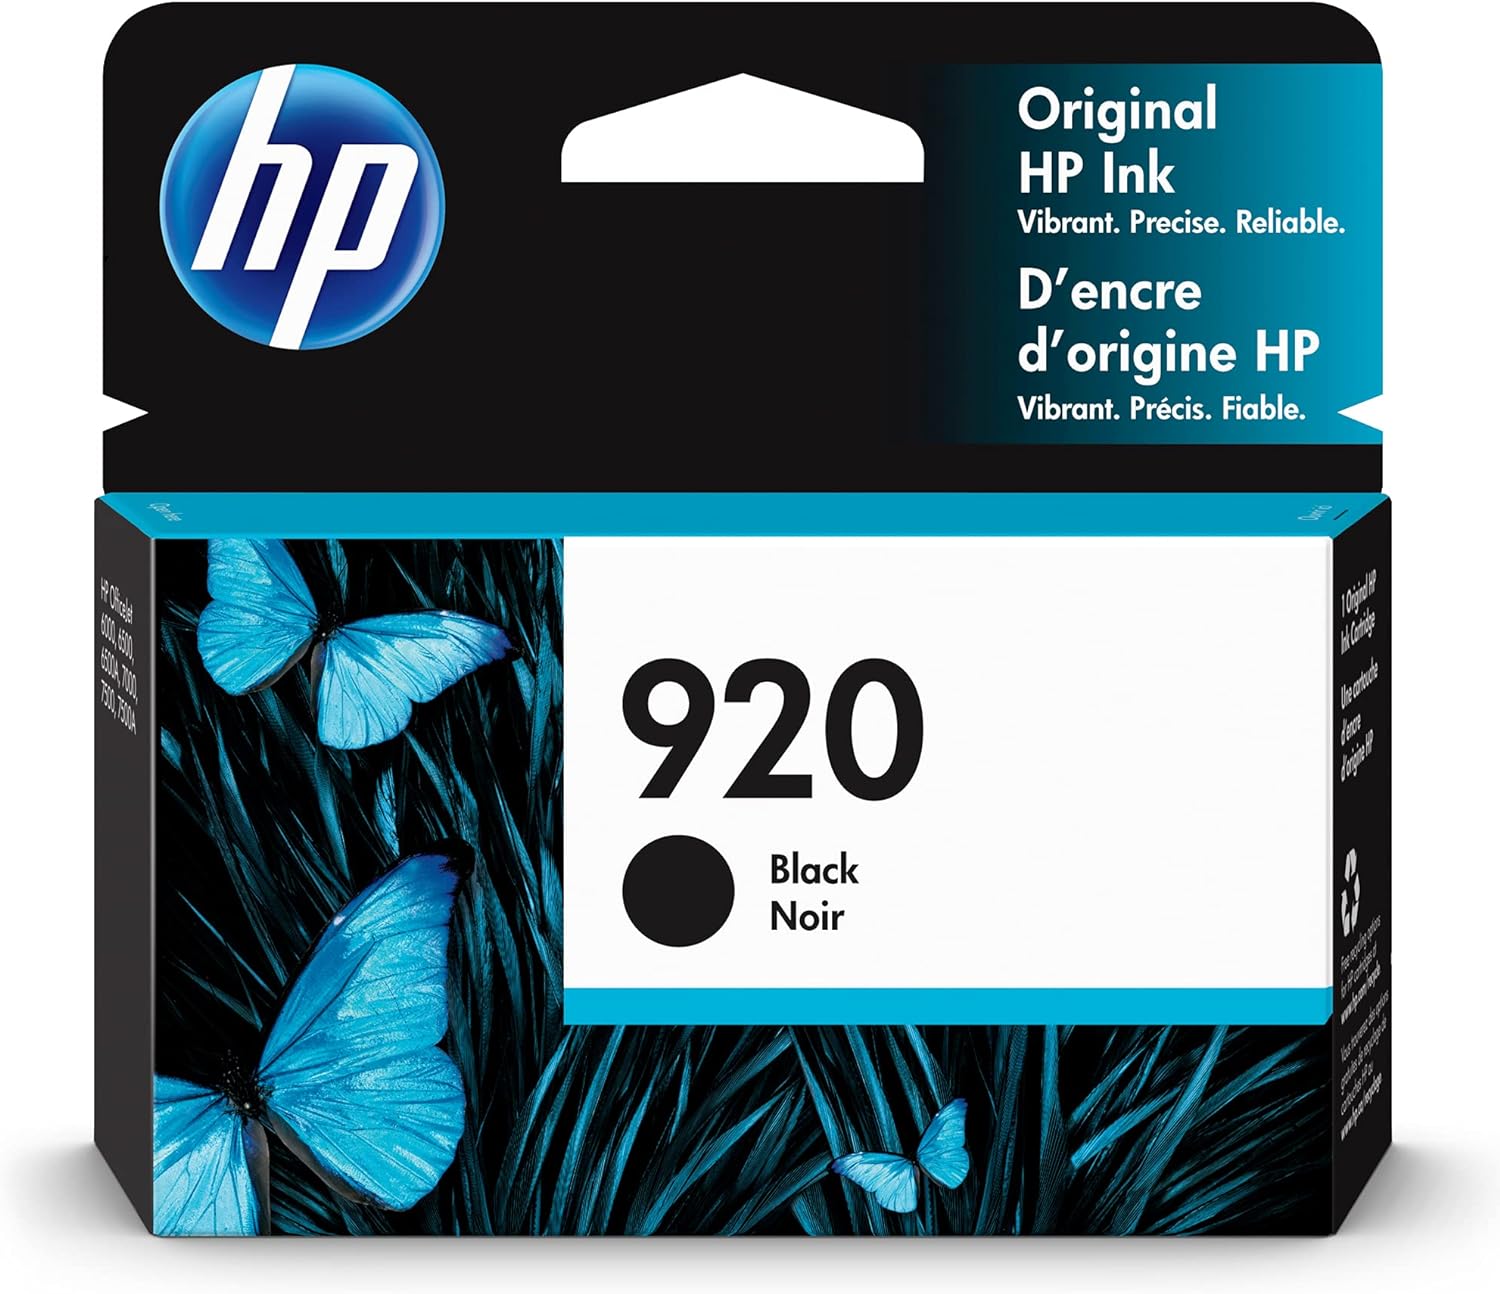 Genuine HP 920 Black Ink Cartridge for Officejet Printers